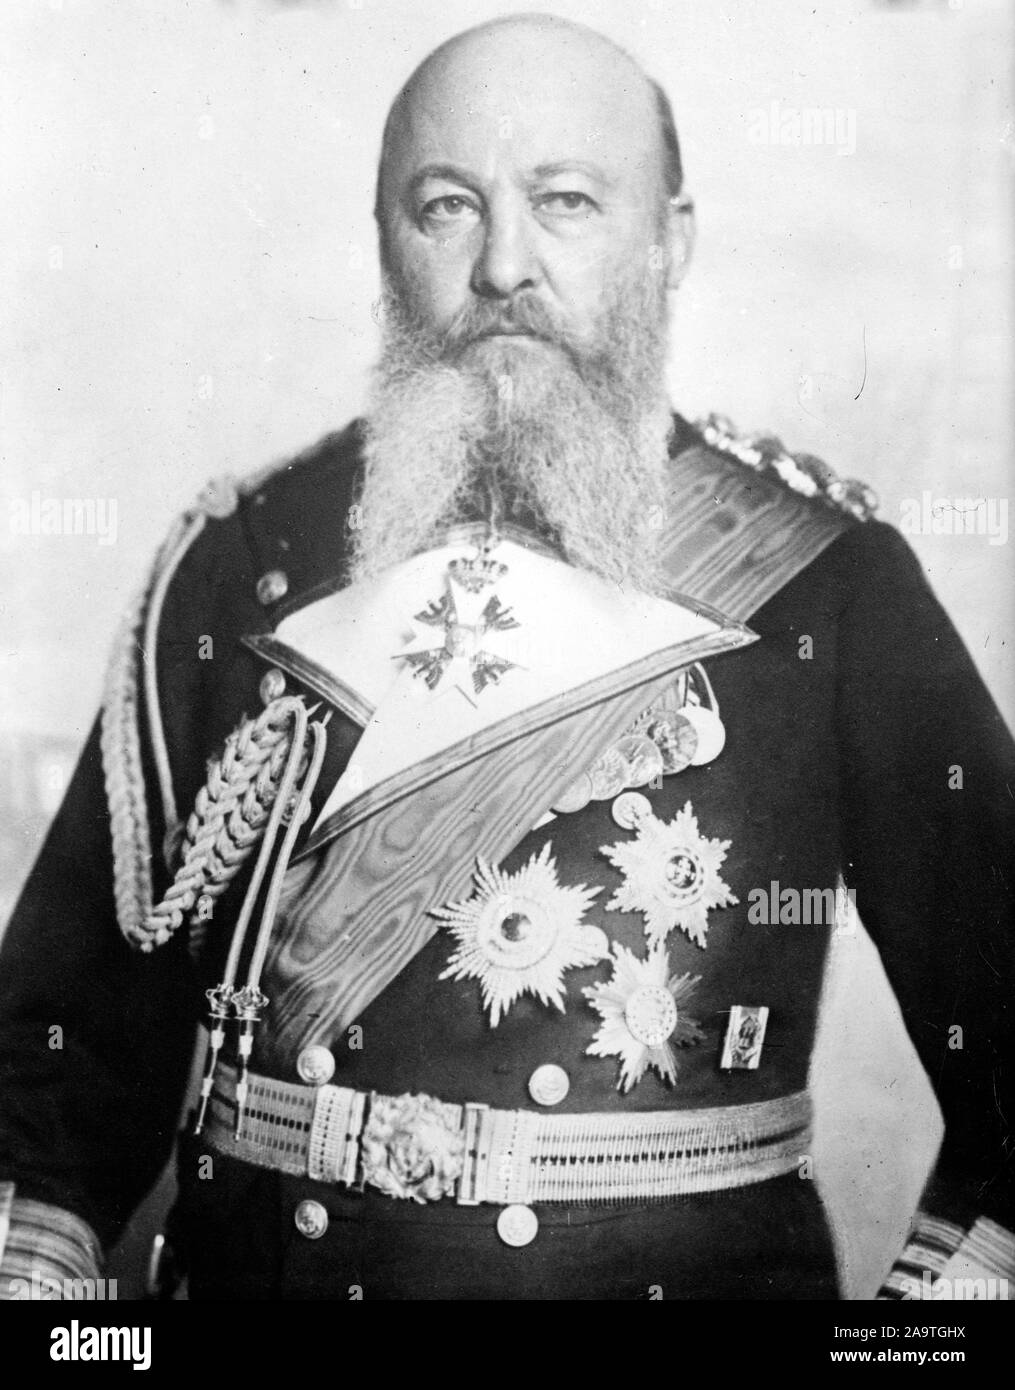 Alfred Von Tirpitz, Alfred Peter Friedrich von Tirpitz (1849 - 1930) Grand Amiral allemand, Secrétaire d'État du Bureau de la Marine impériale allemande, la puissante branche administrative de la Marine impériale allemande de 1897 jusqu'en 1916. Banque D'Images